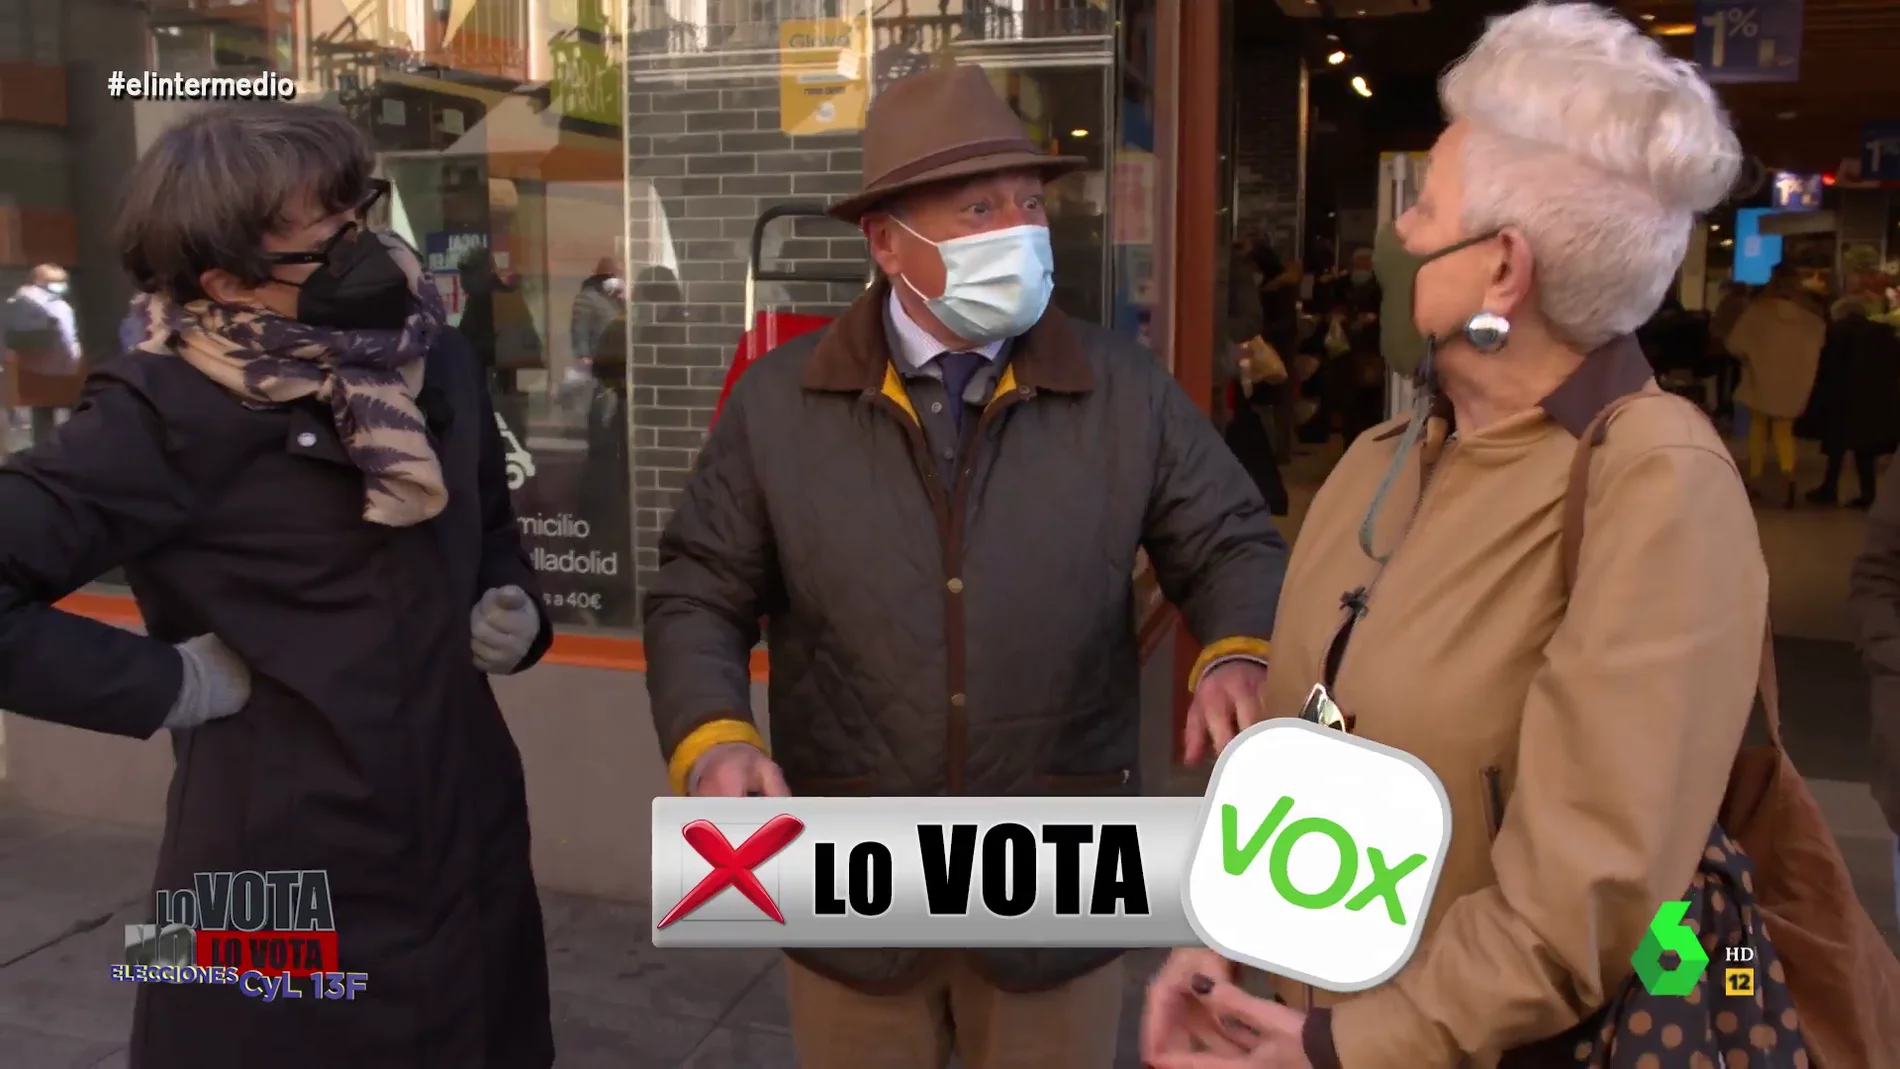 El susto de un señor de Valladolid al decirle que tiene pinta de votar a Vox: "No por favor, no se me ocurriría en la vida"